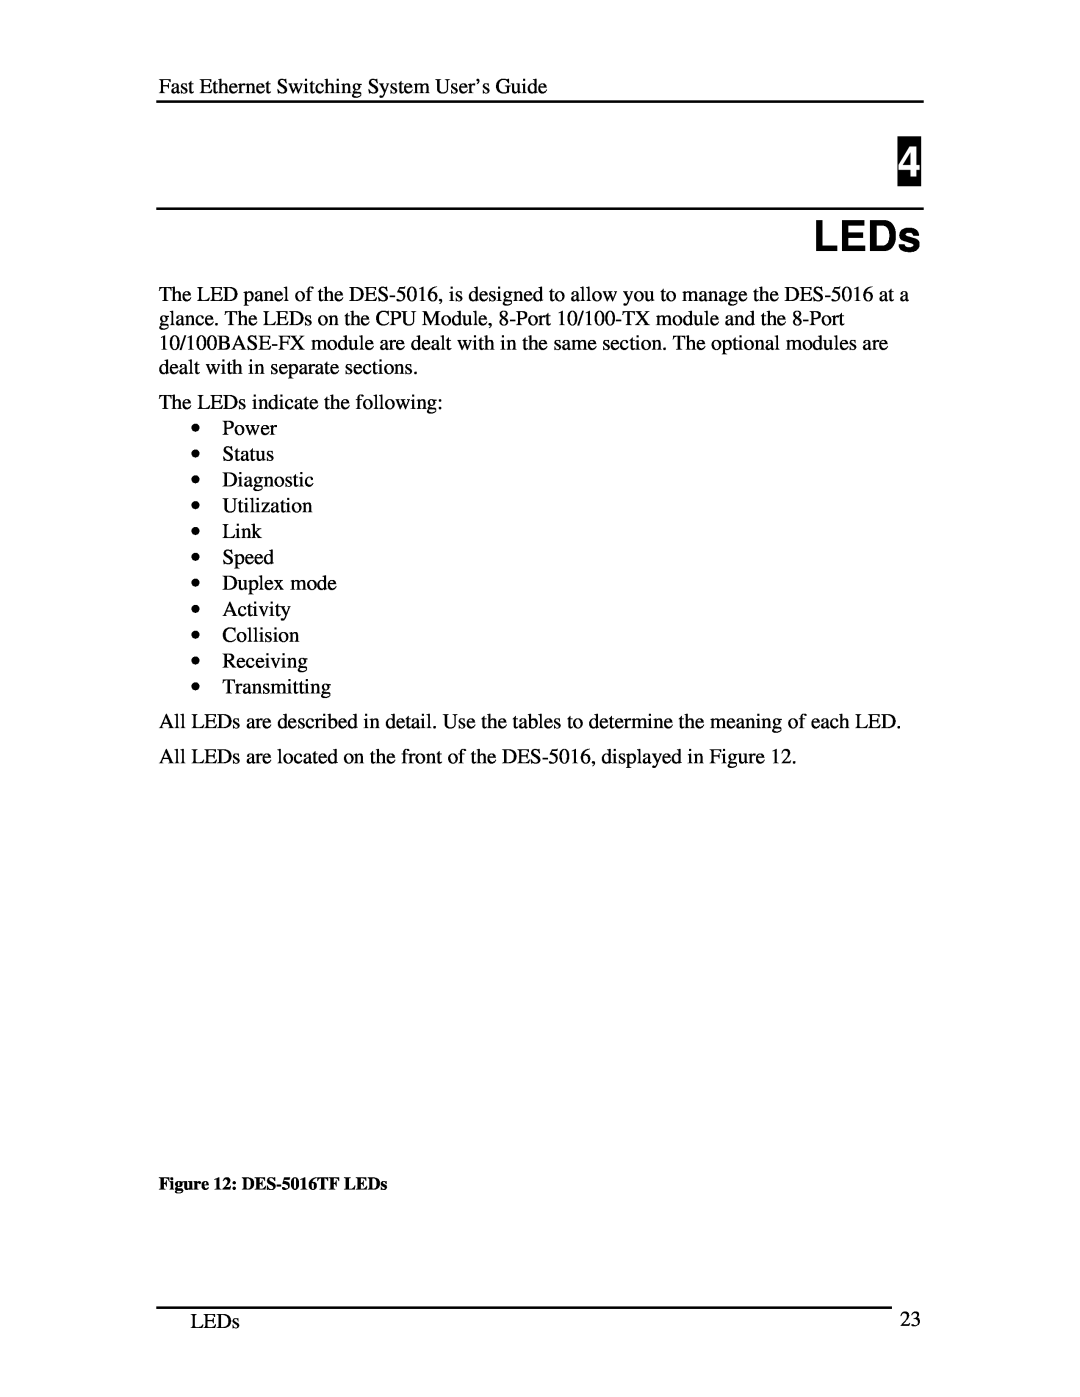 D-Link manual DES-5016TF LEDs 